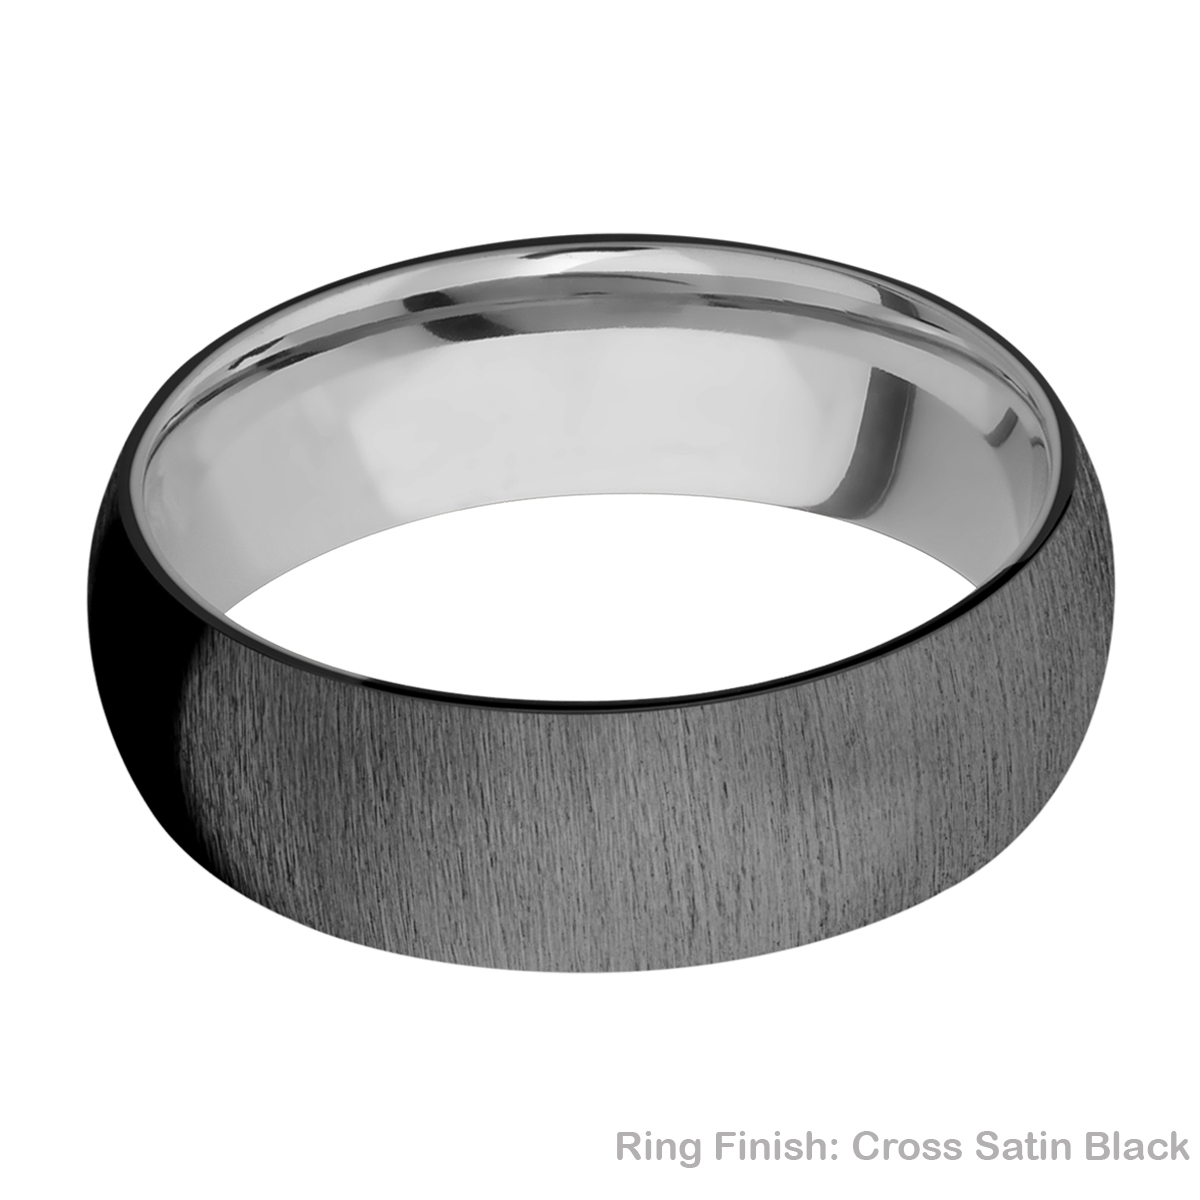 Lashbrook TISLEEVEZ7D Zirconium and Titanium Wedding Ring or Band